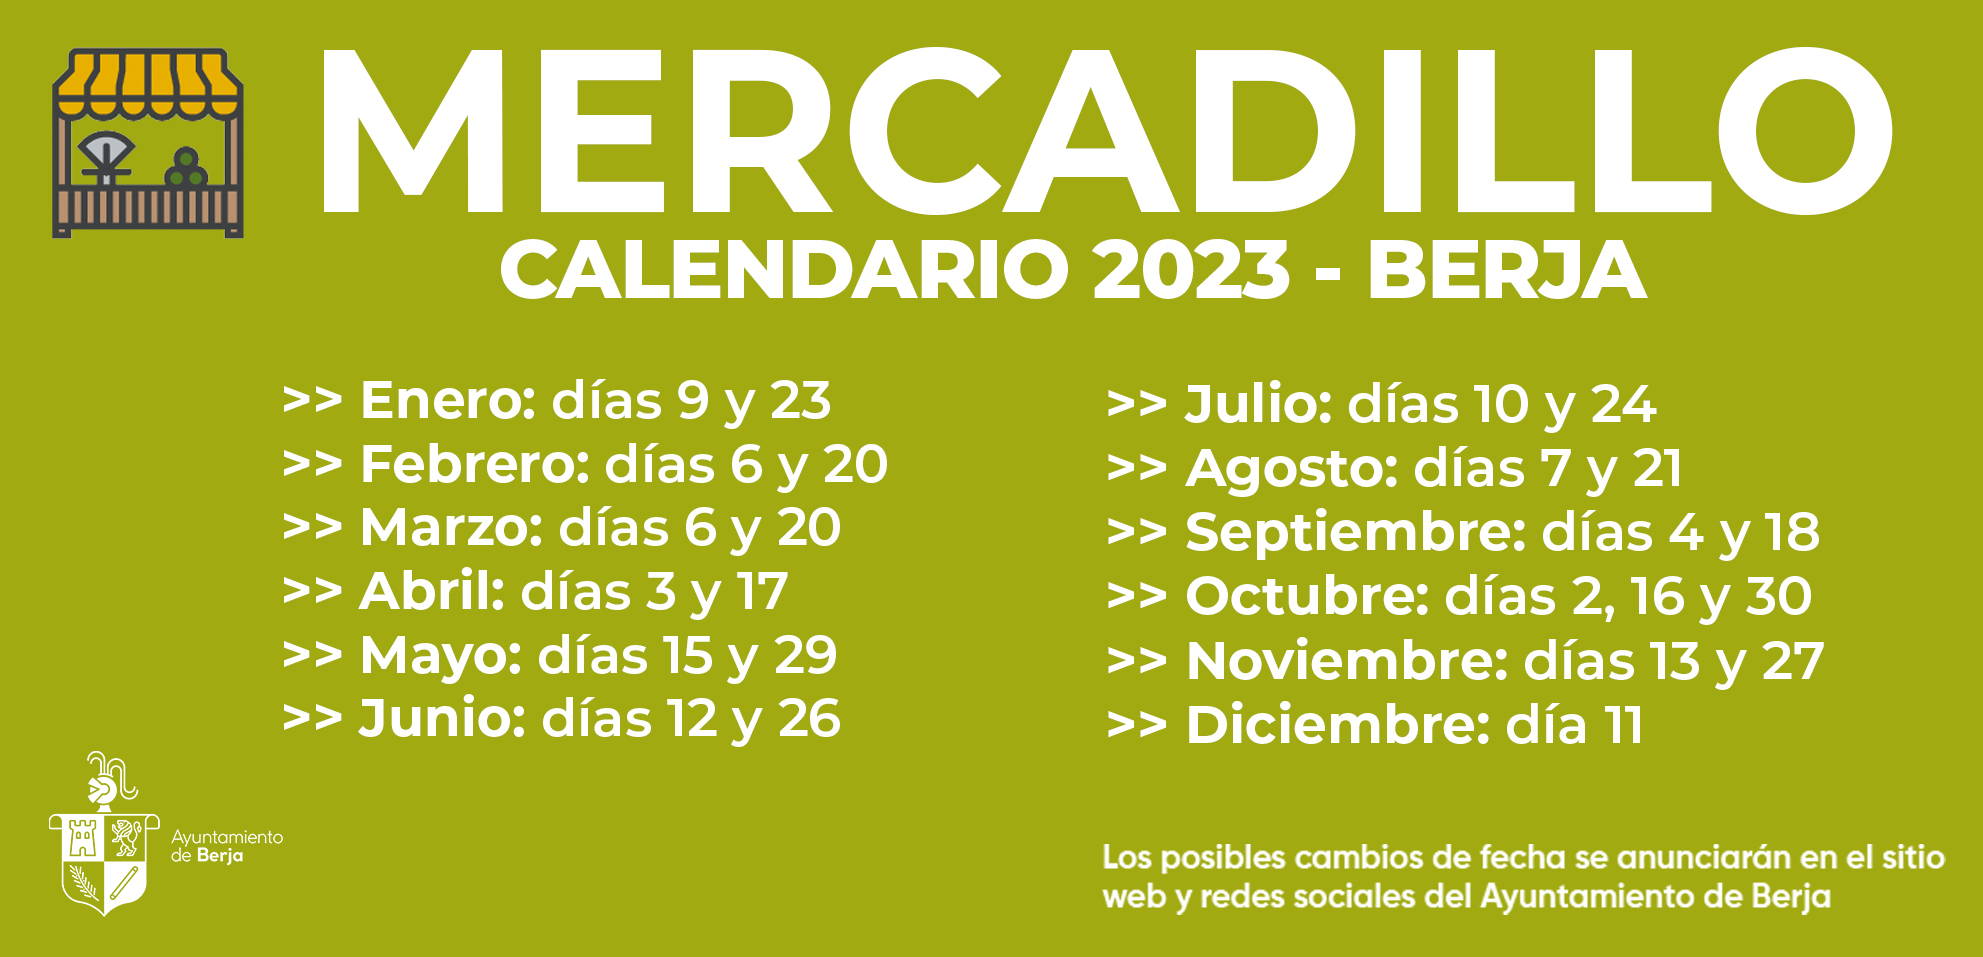 Calendario del Mercadillo de Berja 2023